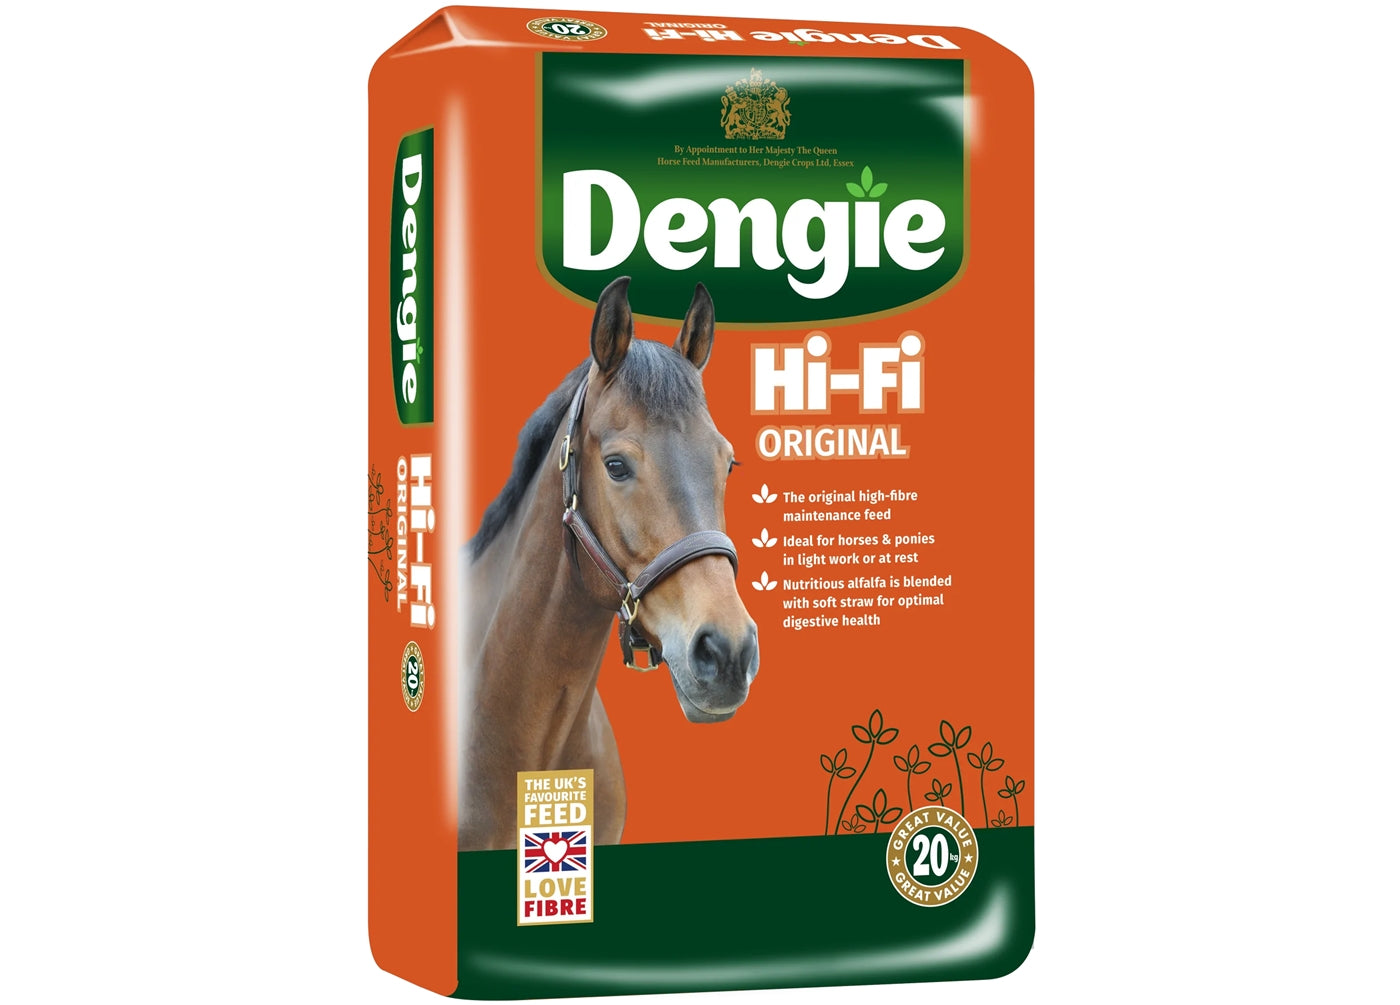 Dengie Hi-Fi Original | High Fibre Horse Feed - Buy Online SPR Centre